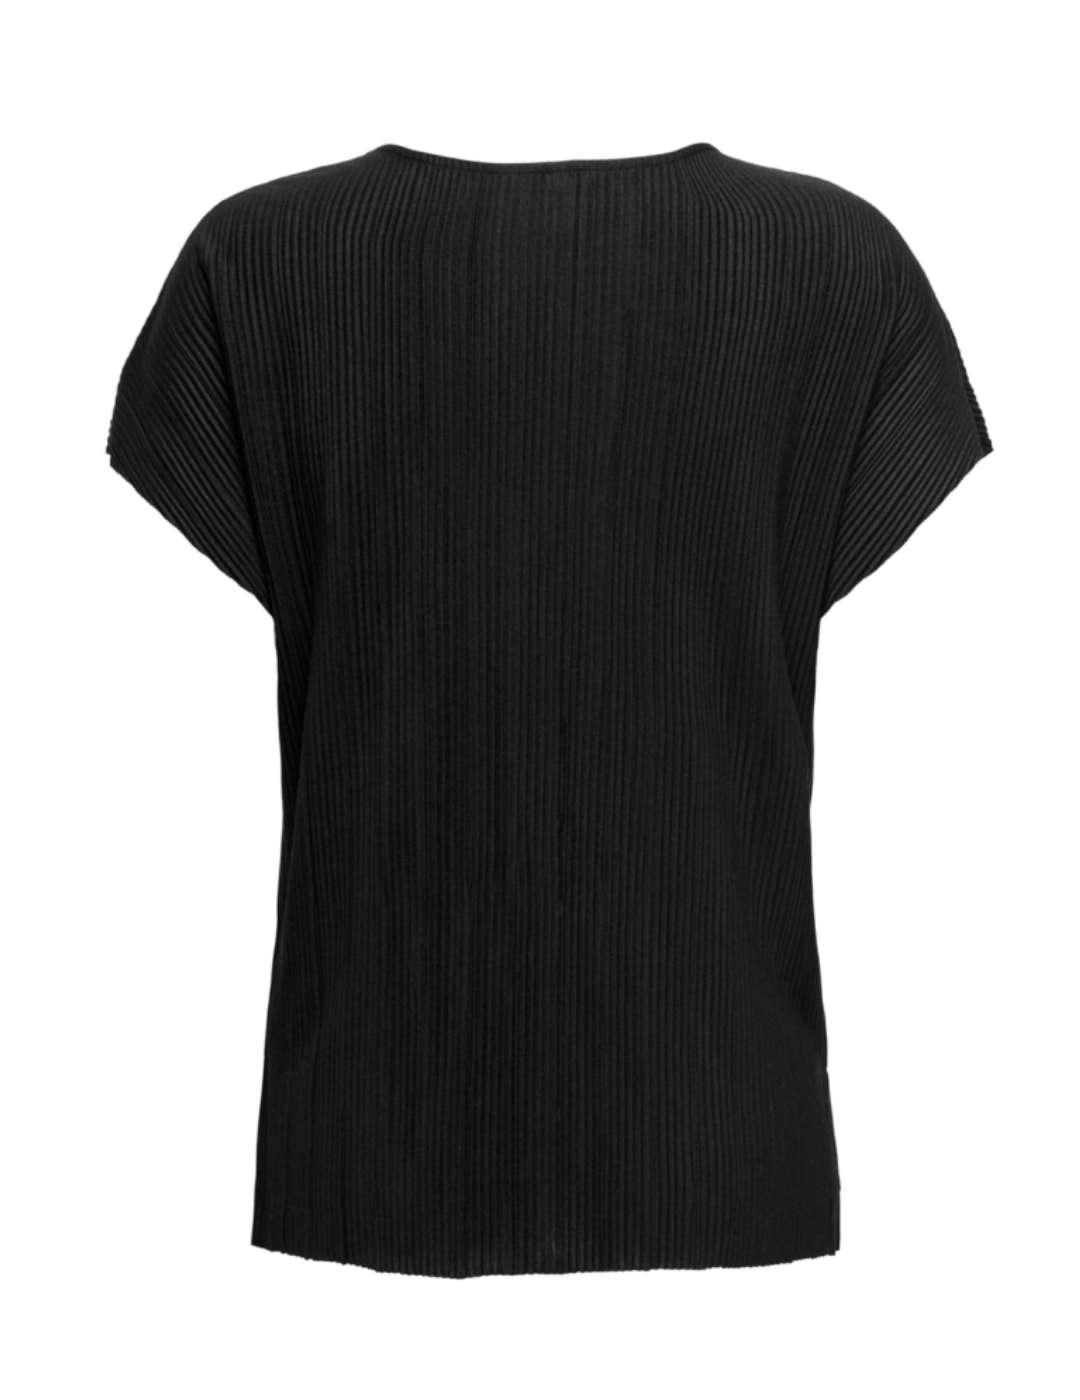 Camiseta Only Fina cuello v negro manga corta para mujer